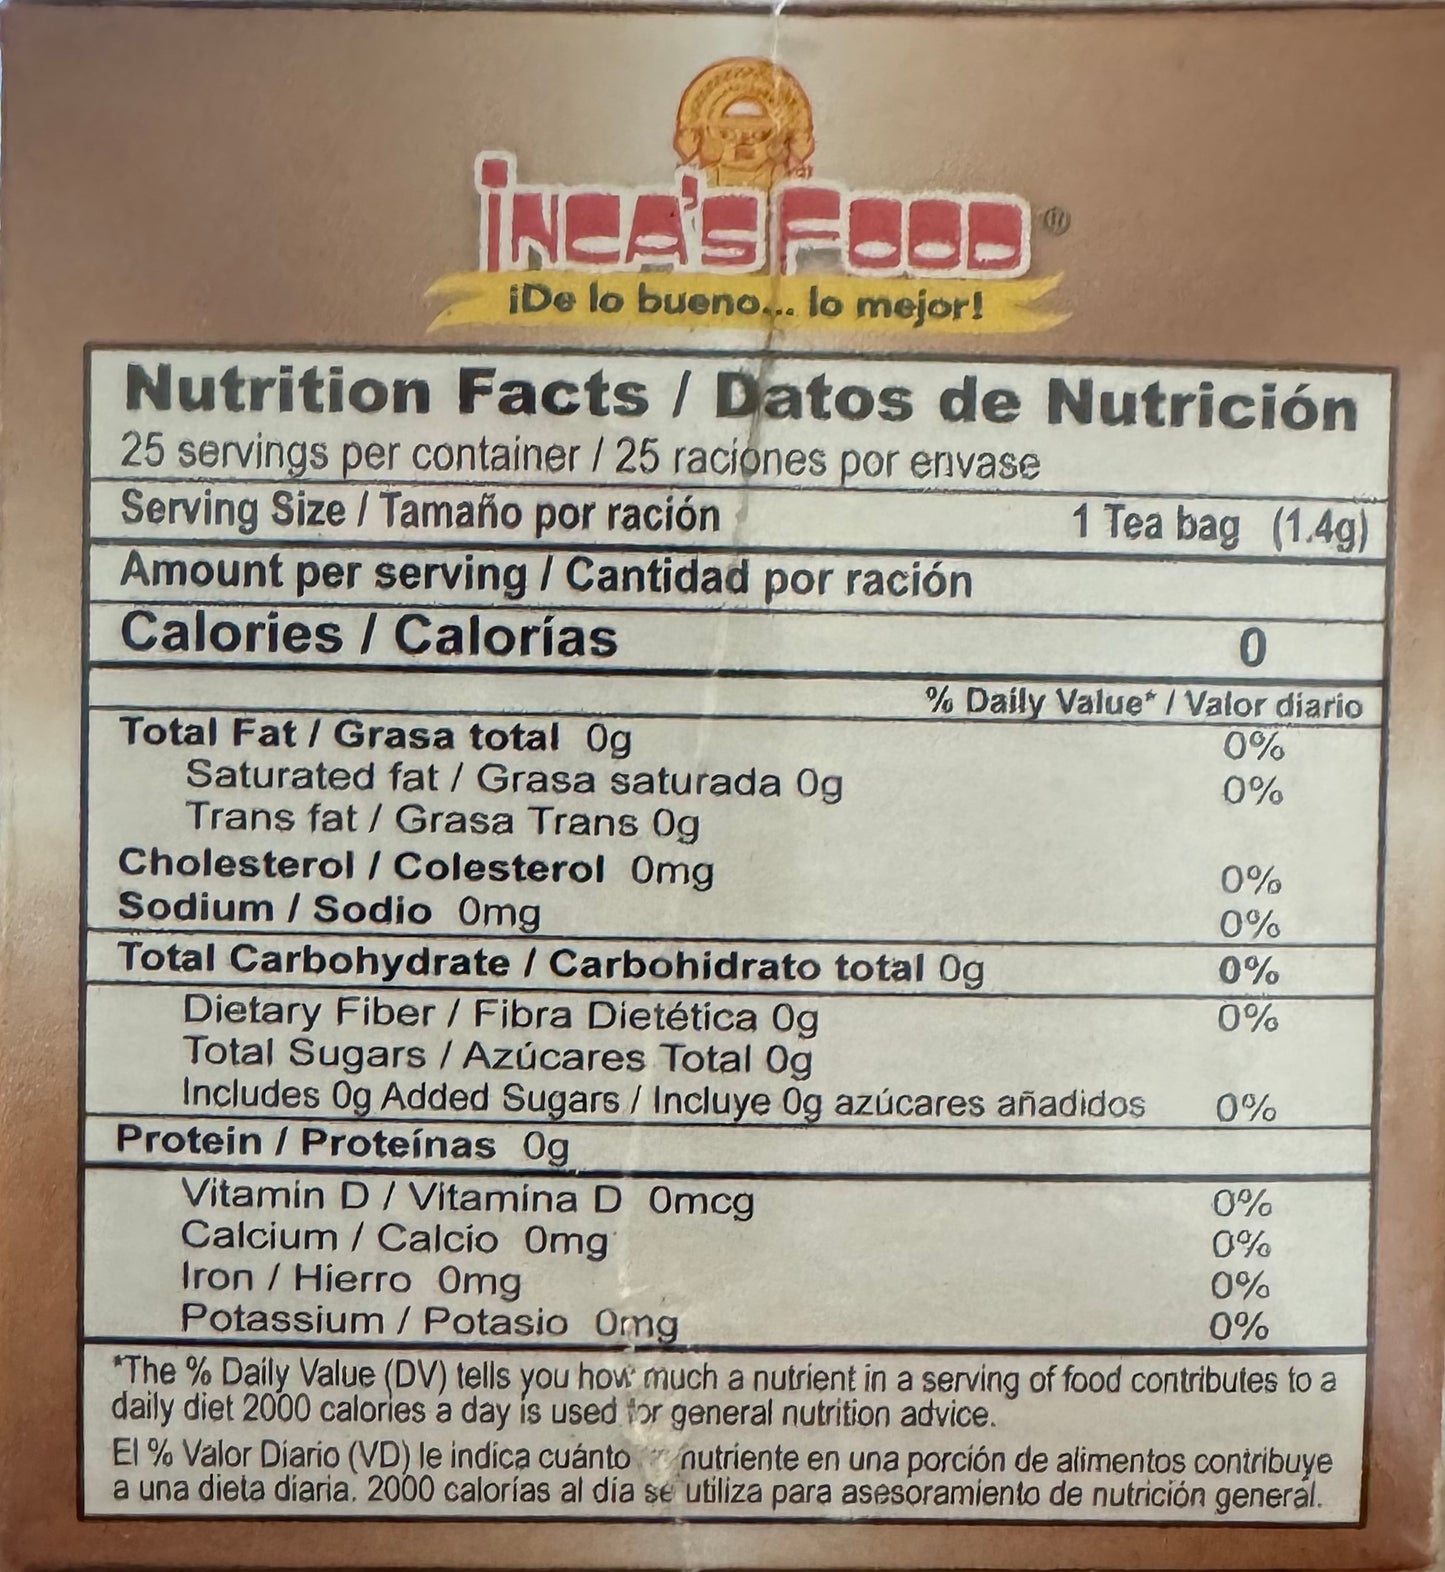 Inca's food emoliente nutrition facts